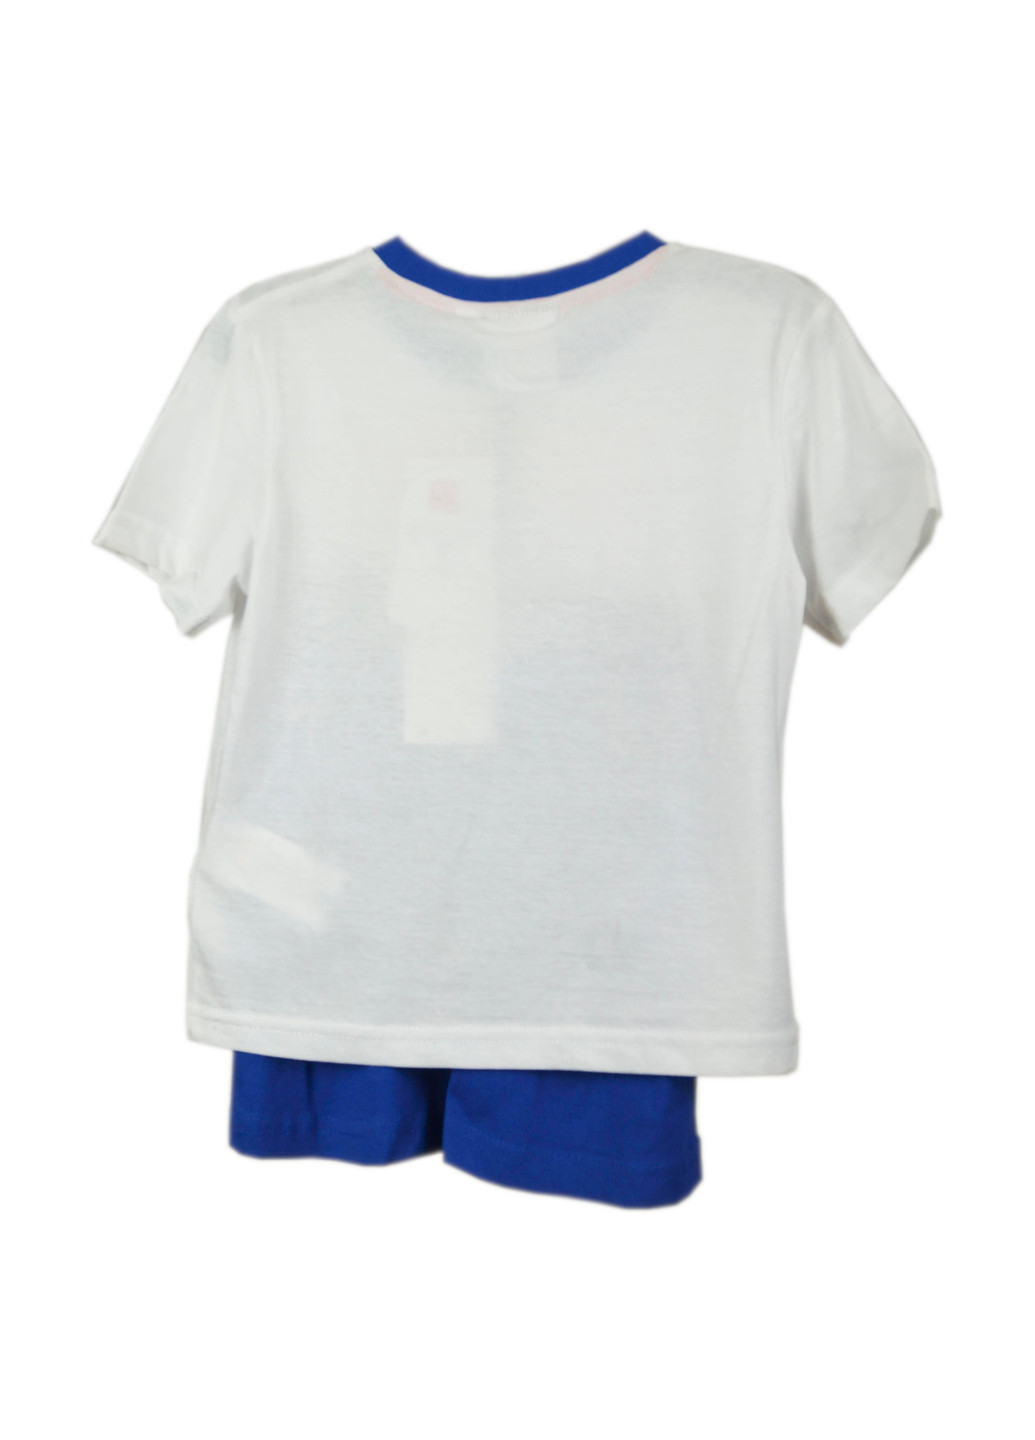 Белый летний комплект (футболка, шорты) Minions